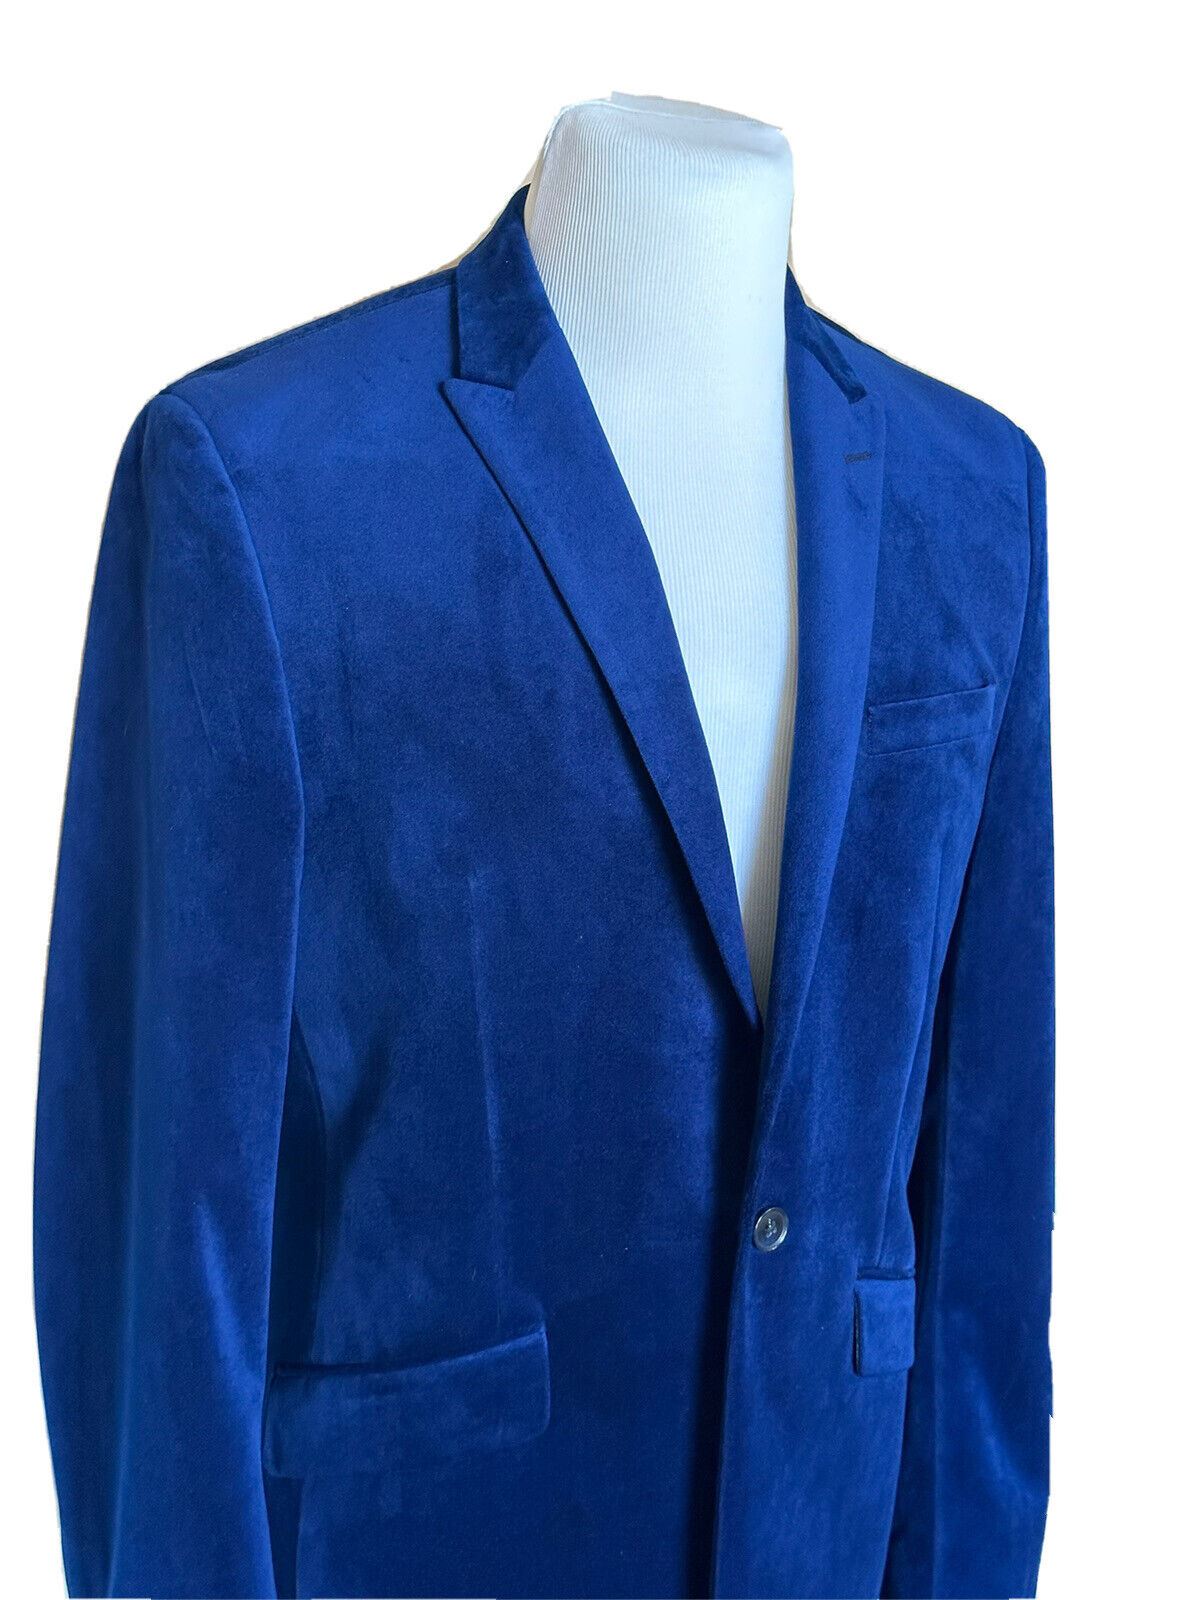 Мужская бархатная спортивная куртка Bar III, синяя, размер 40, США (50 евро) 